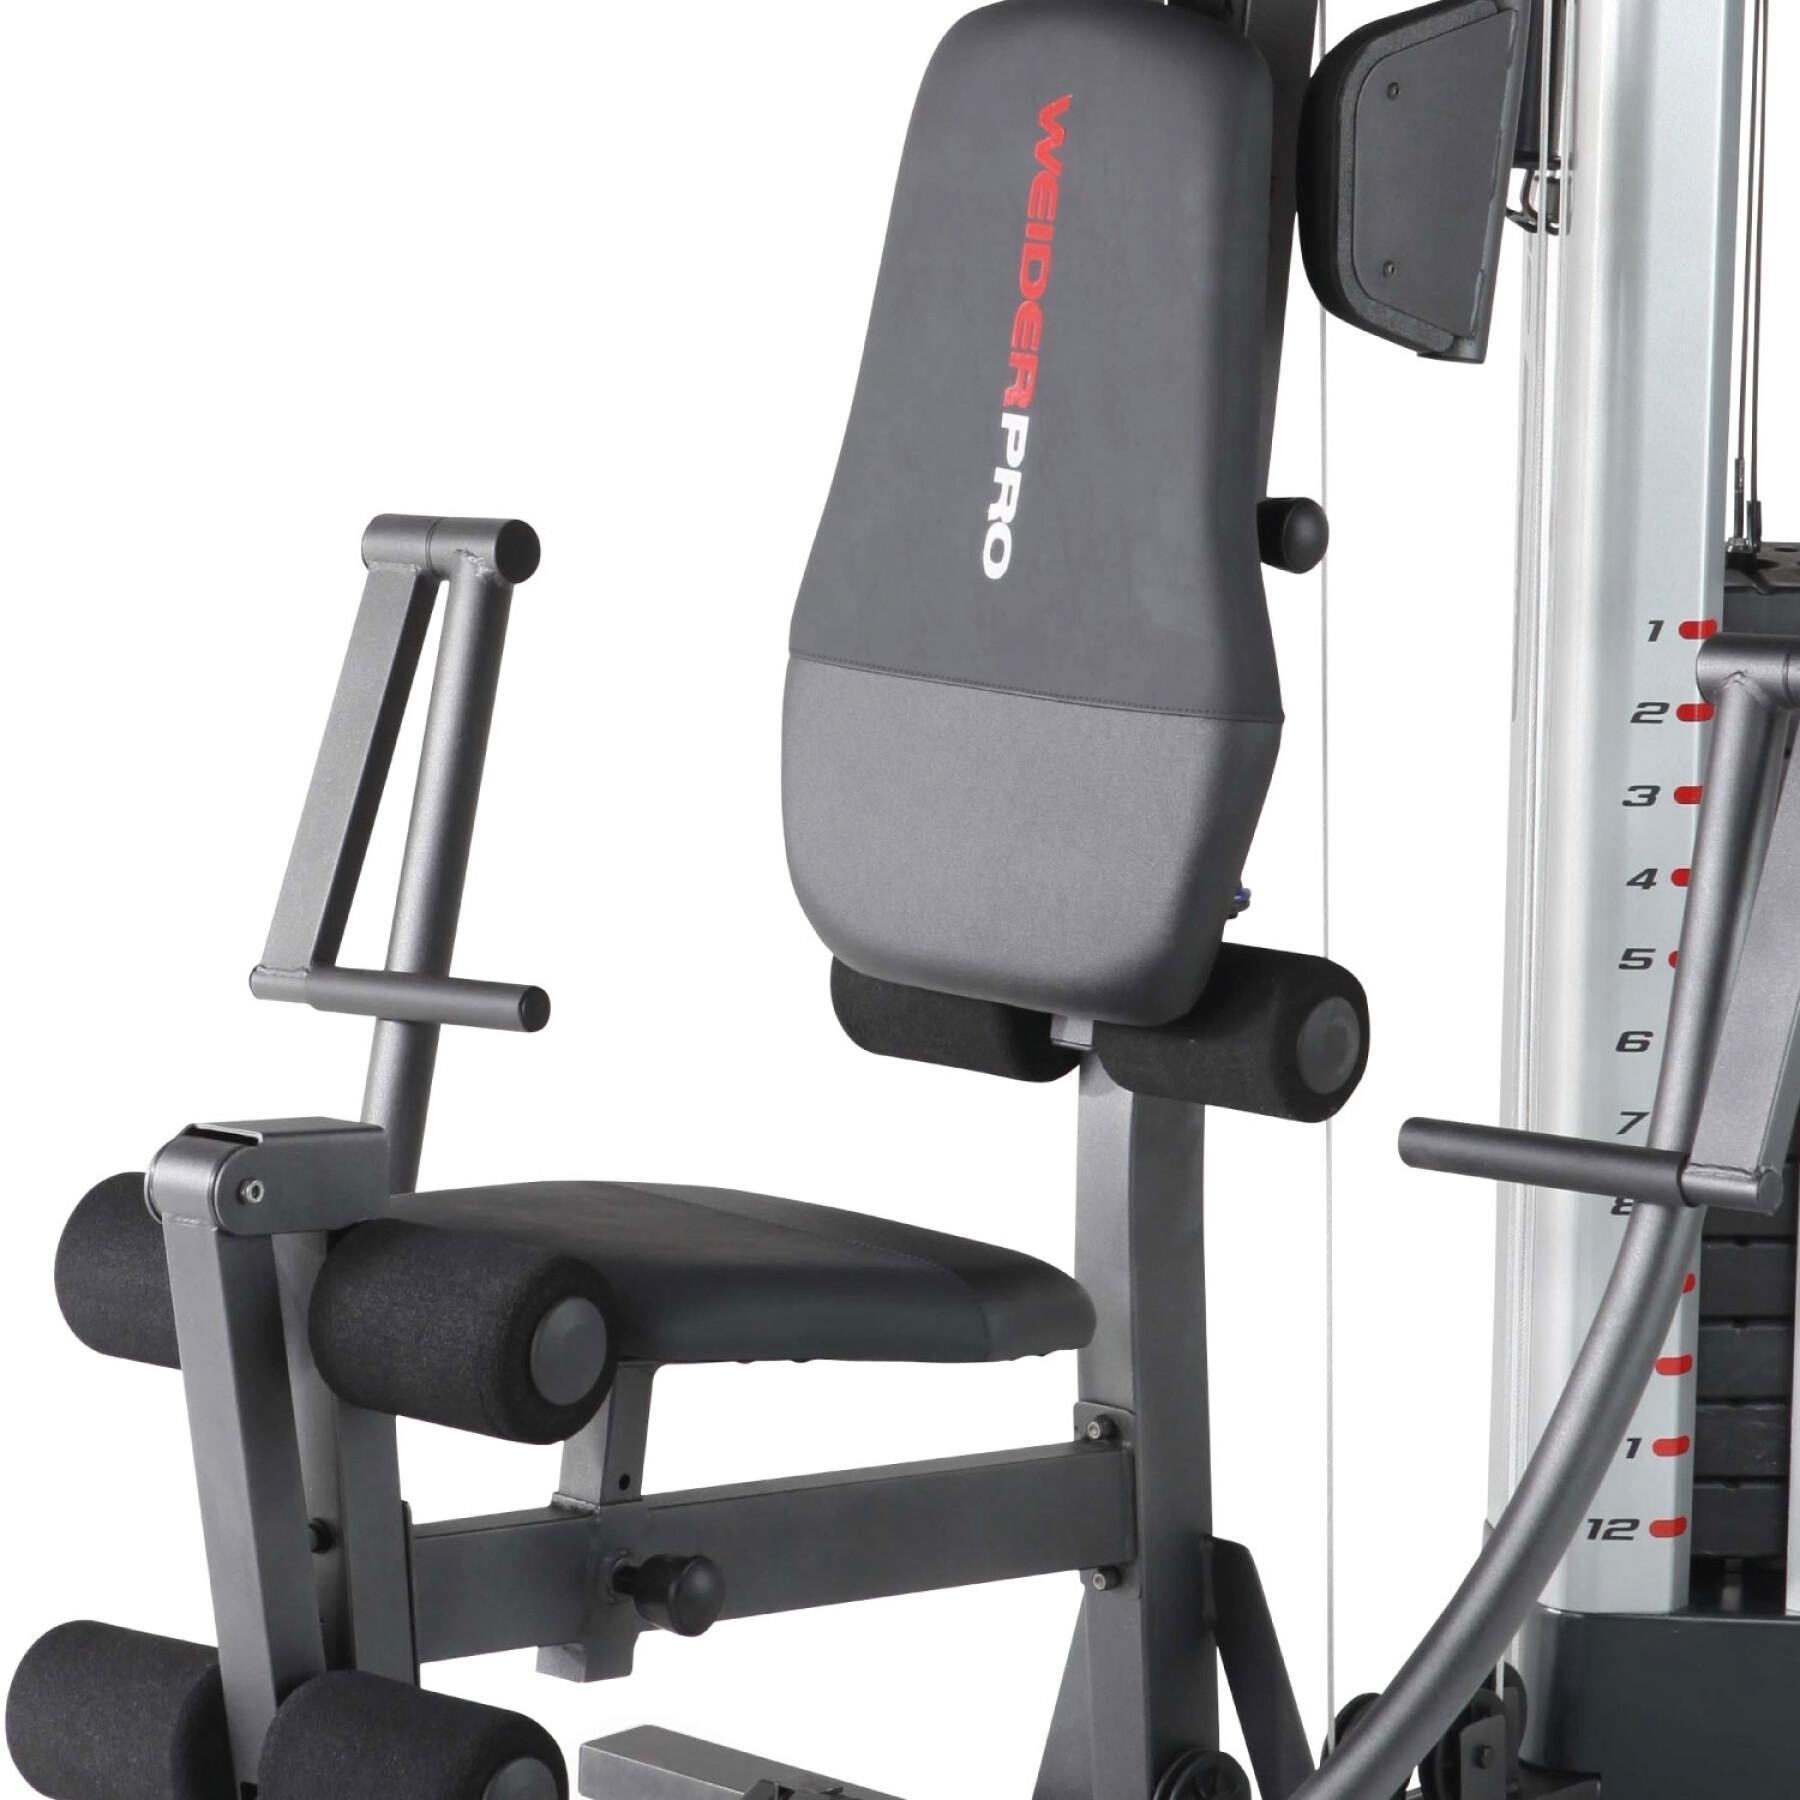 Weight training machine Weider 9900